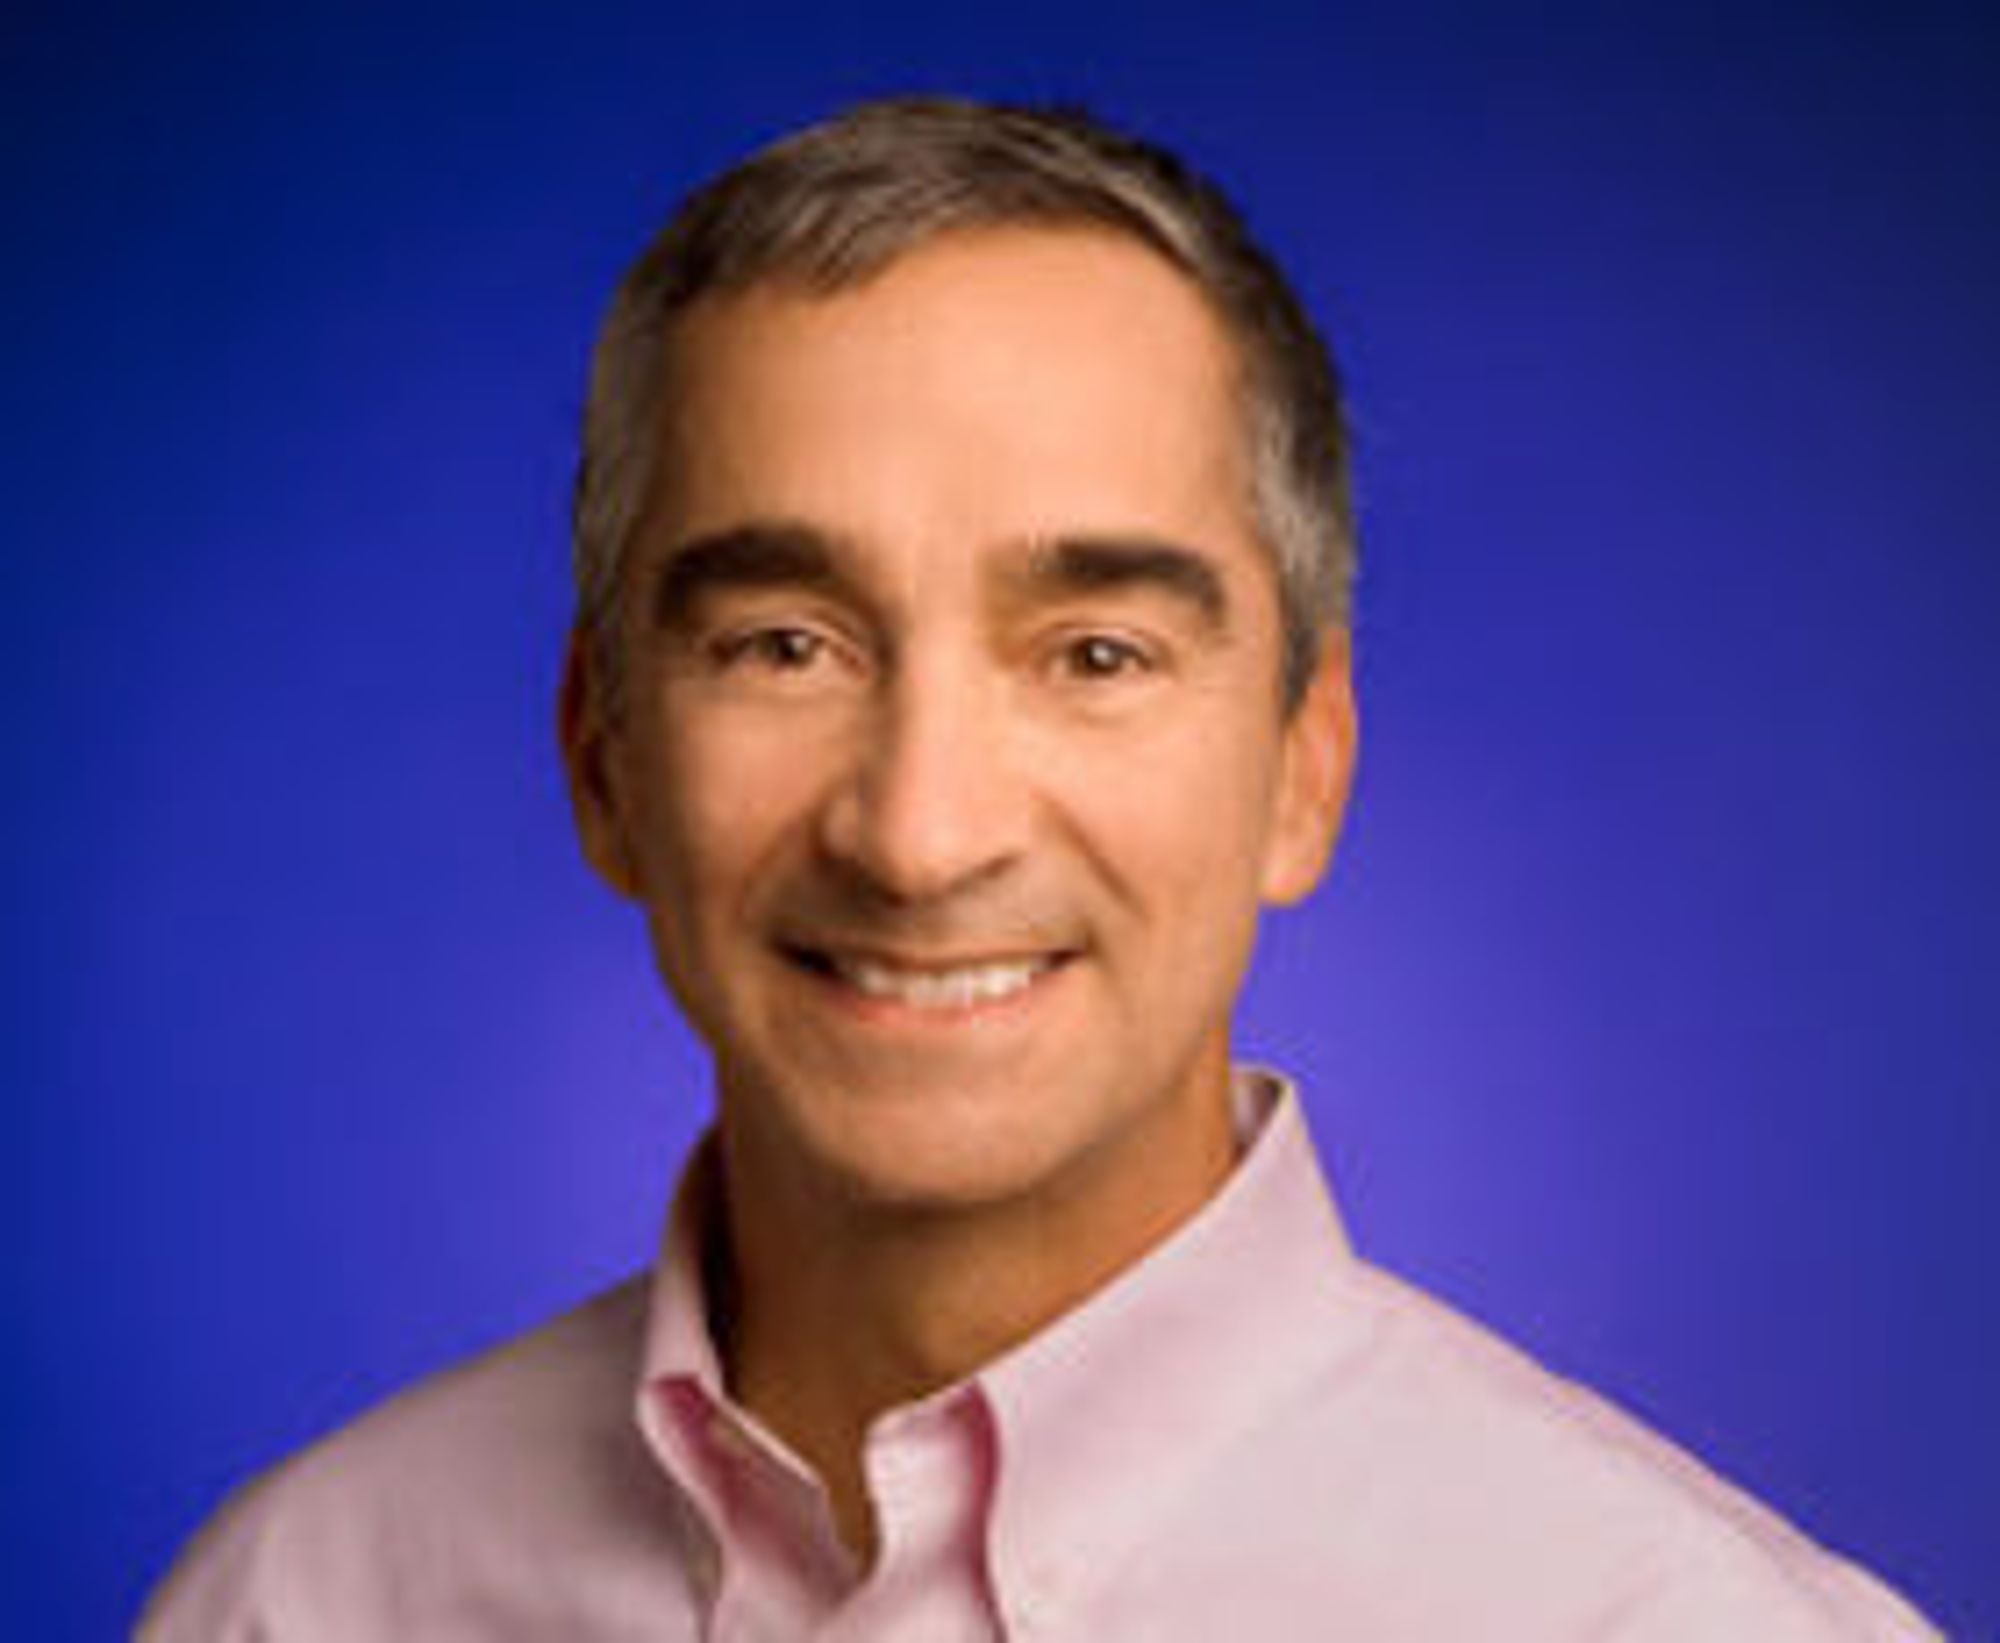 Patrick Pichette er finansdirektør i Google.